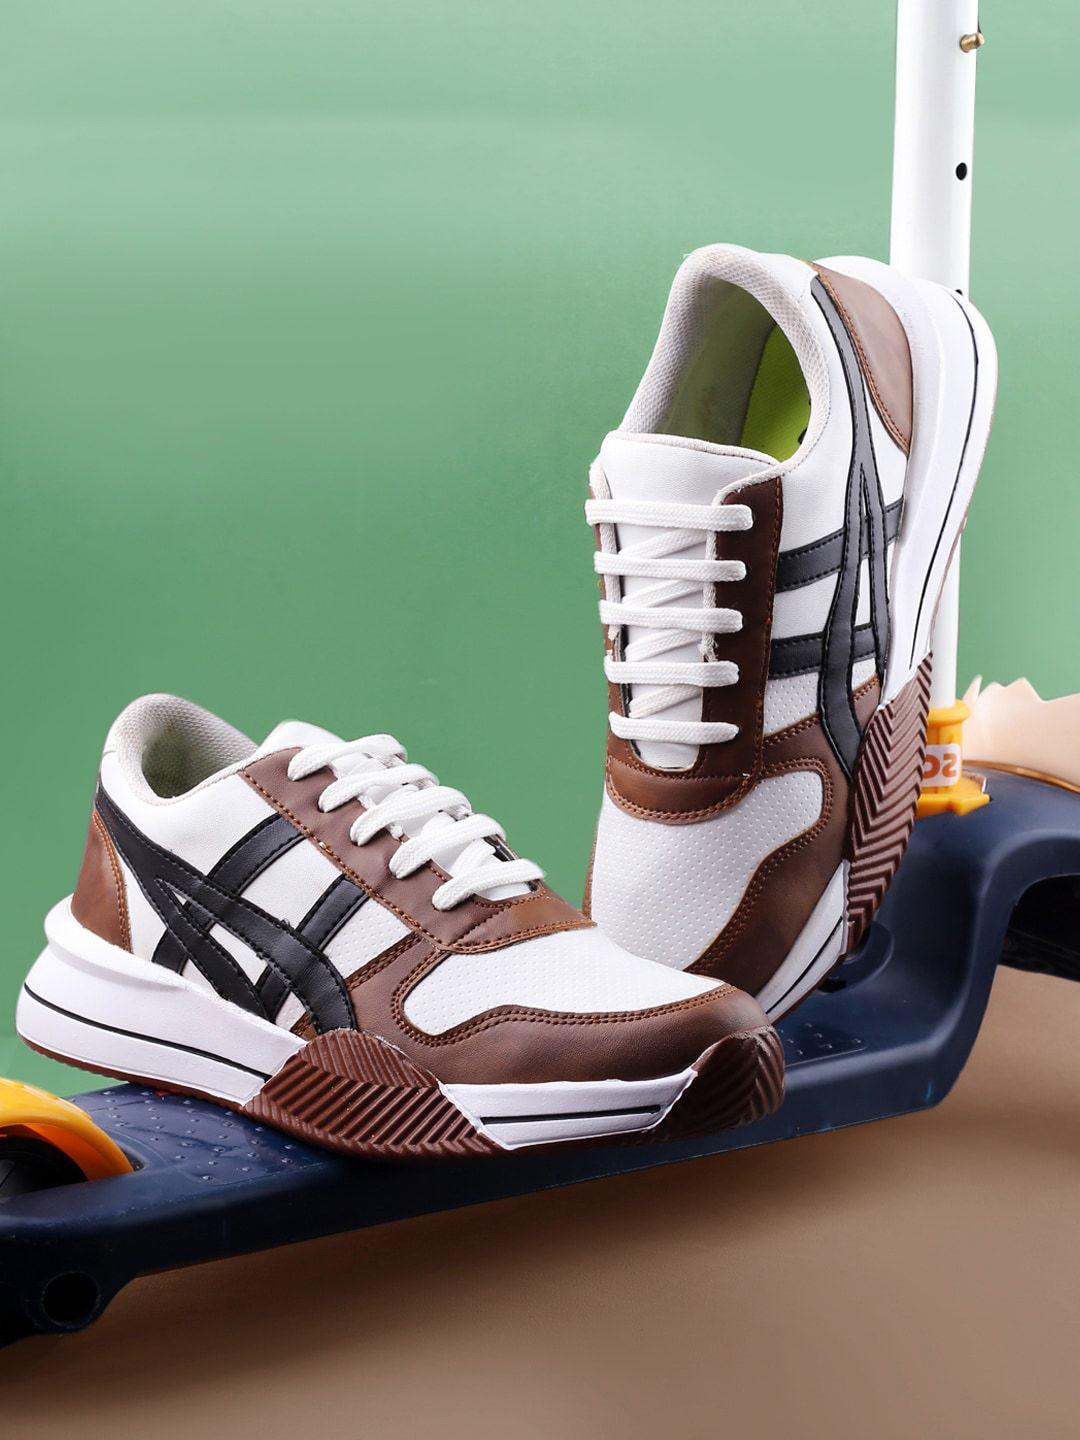 mr.wonker men deziner colourblocked waterproof lining comfort contrast sole sneakers